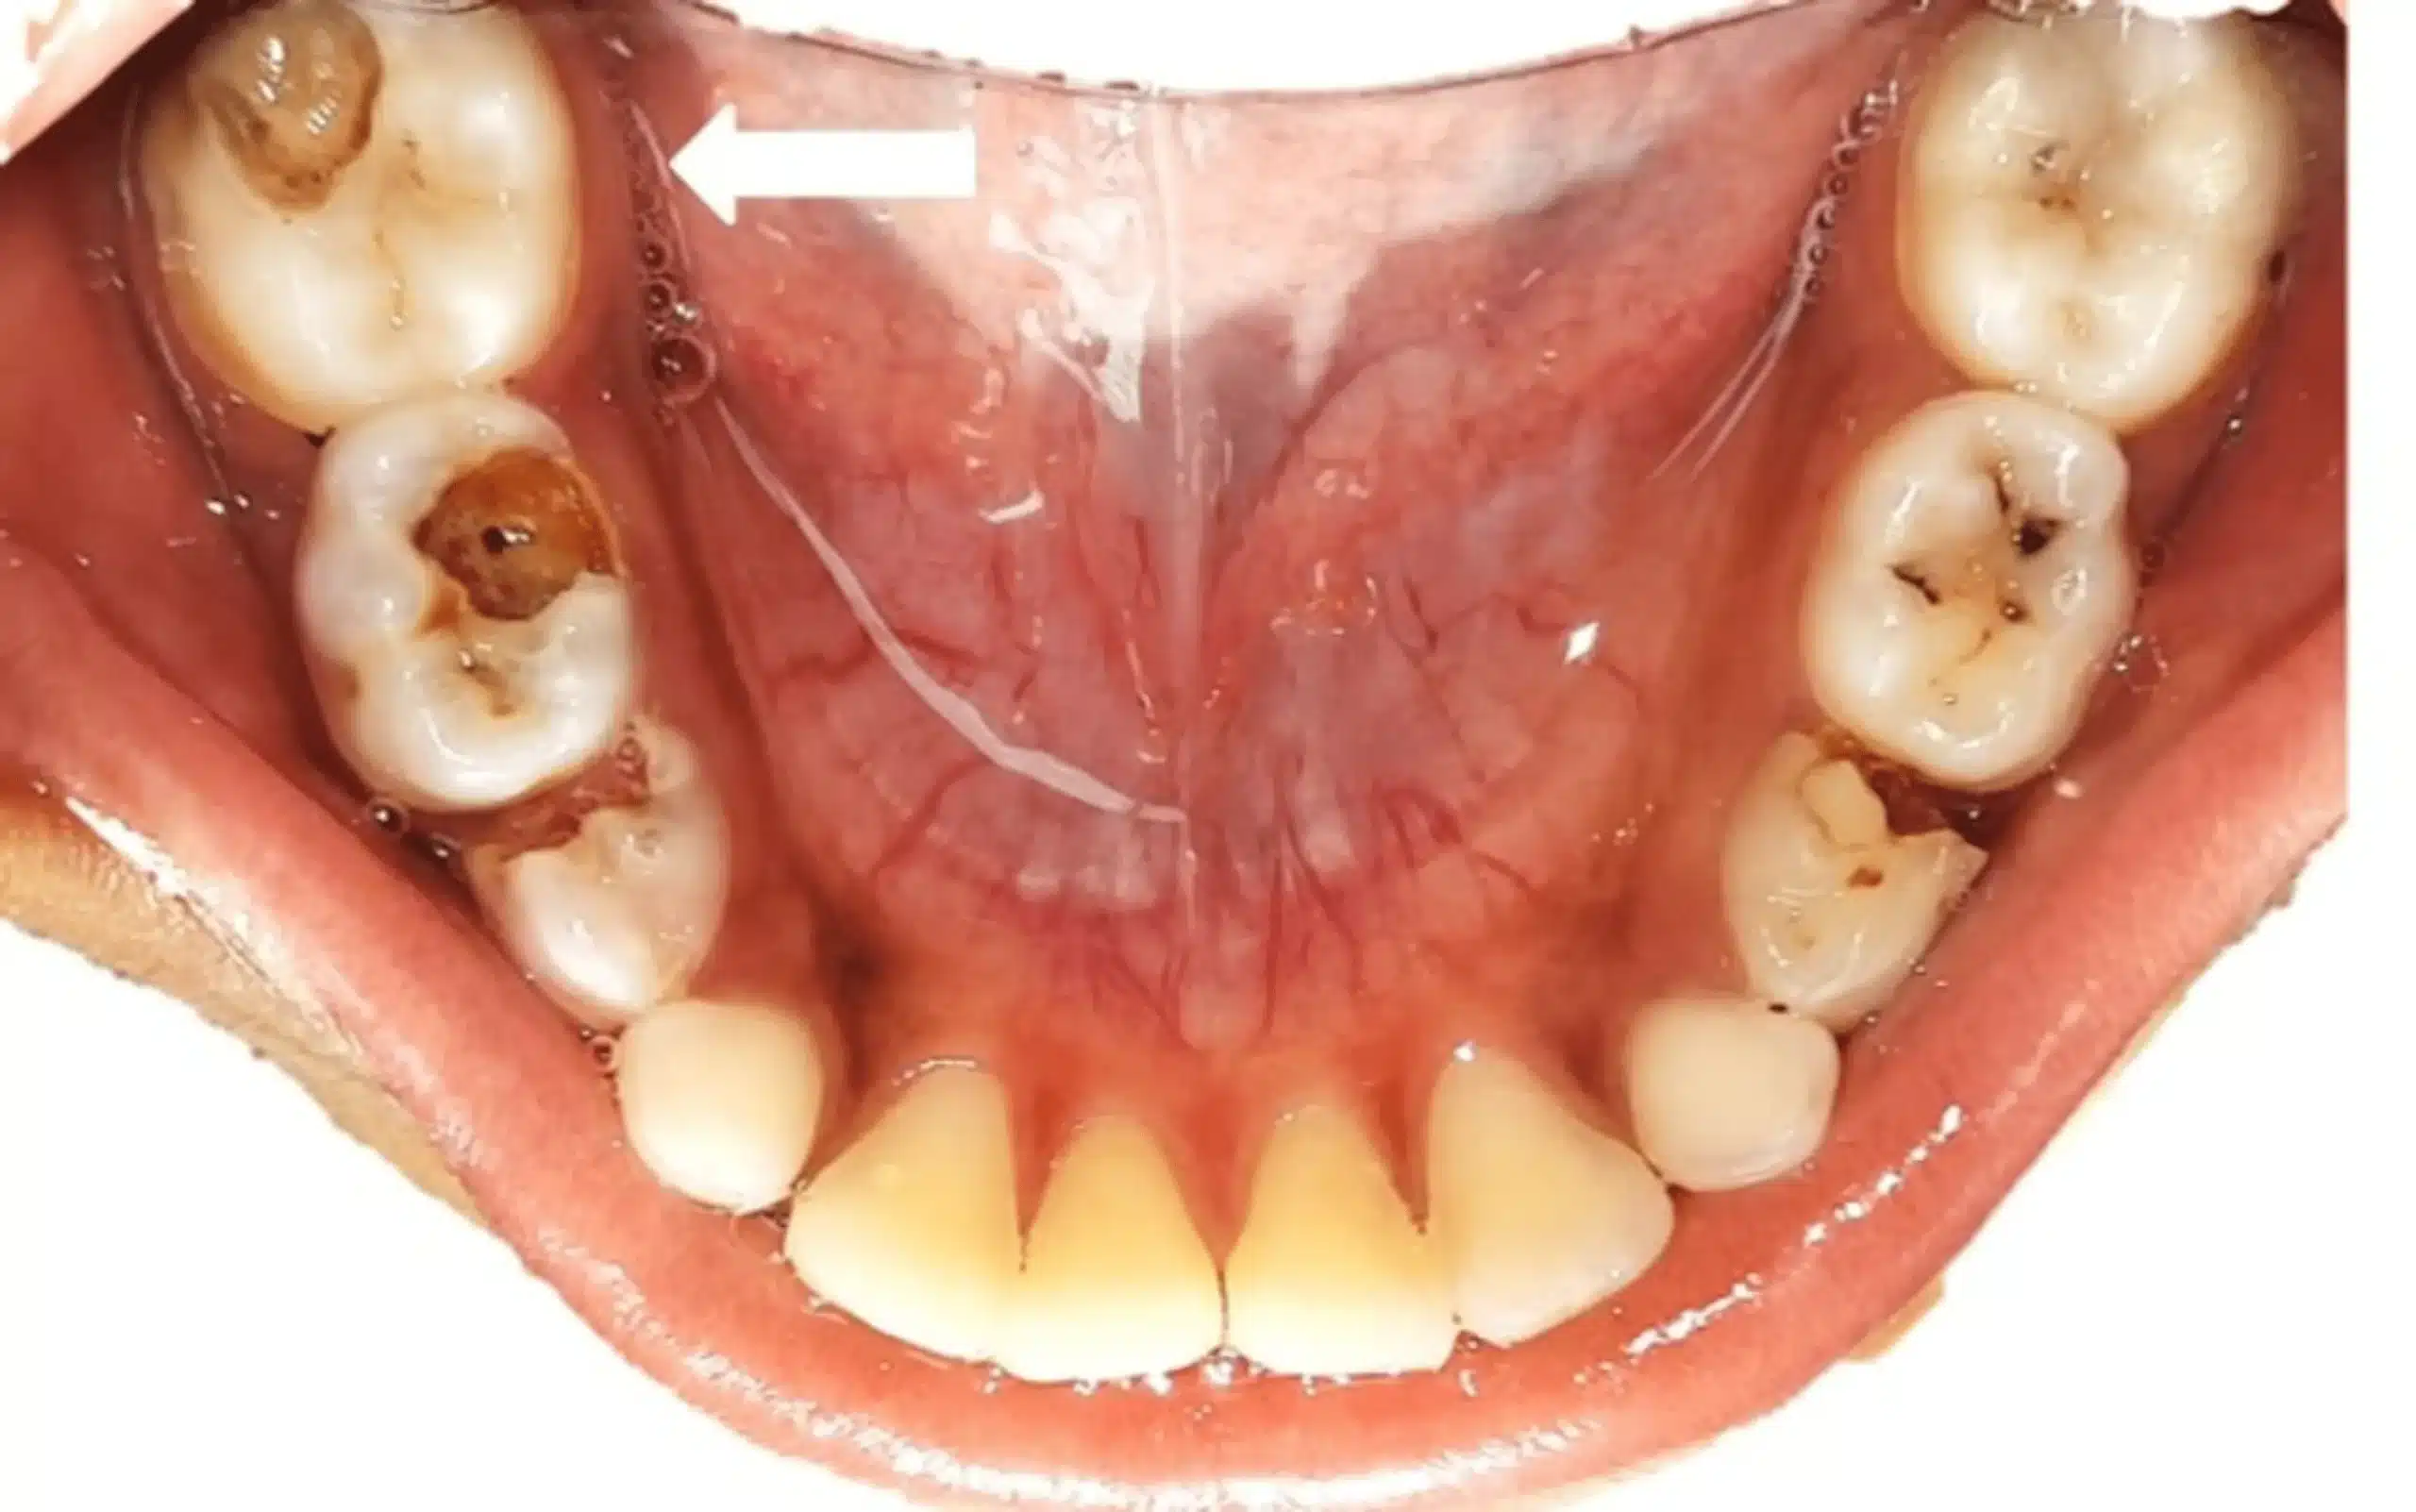 Tủy răng hoại tử là bệnh răng miệng nghiêm trọng